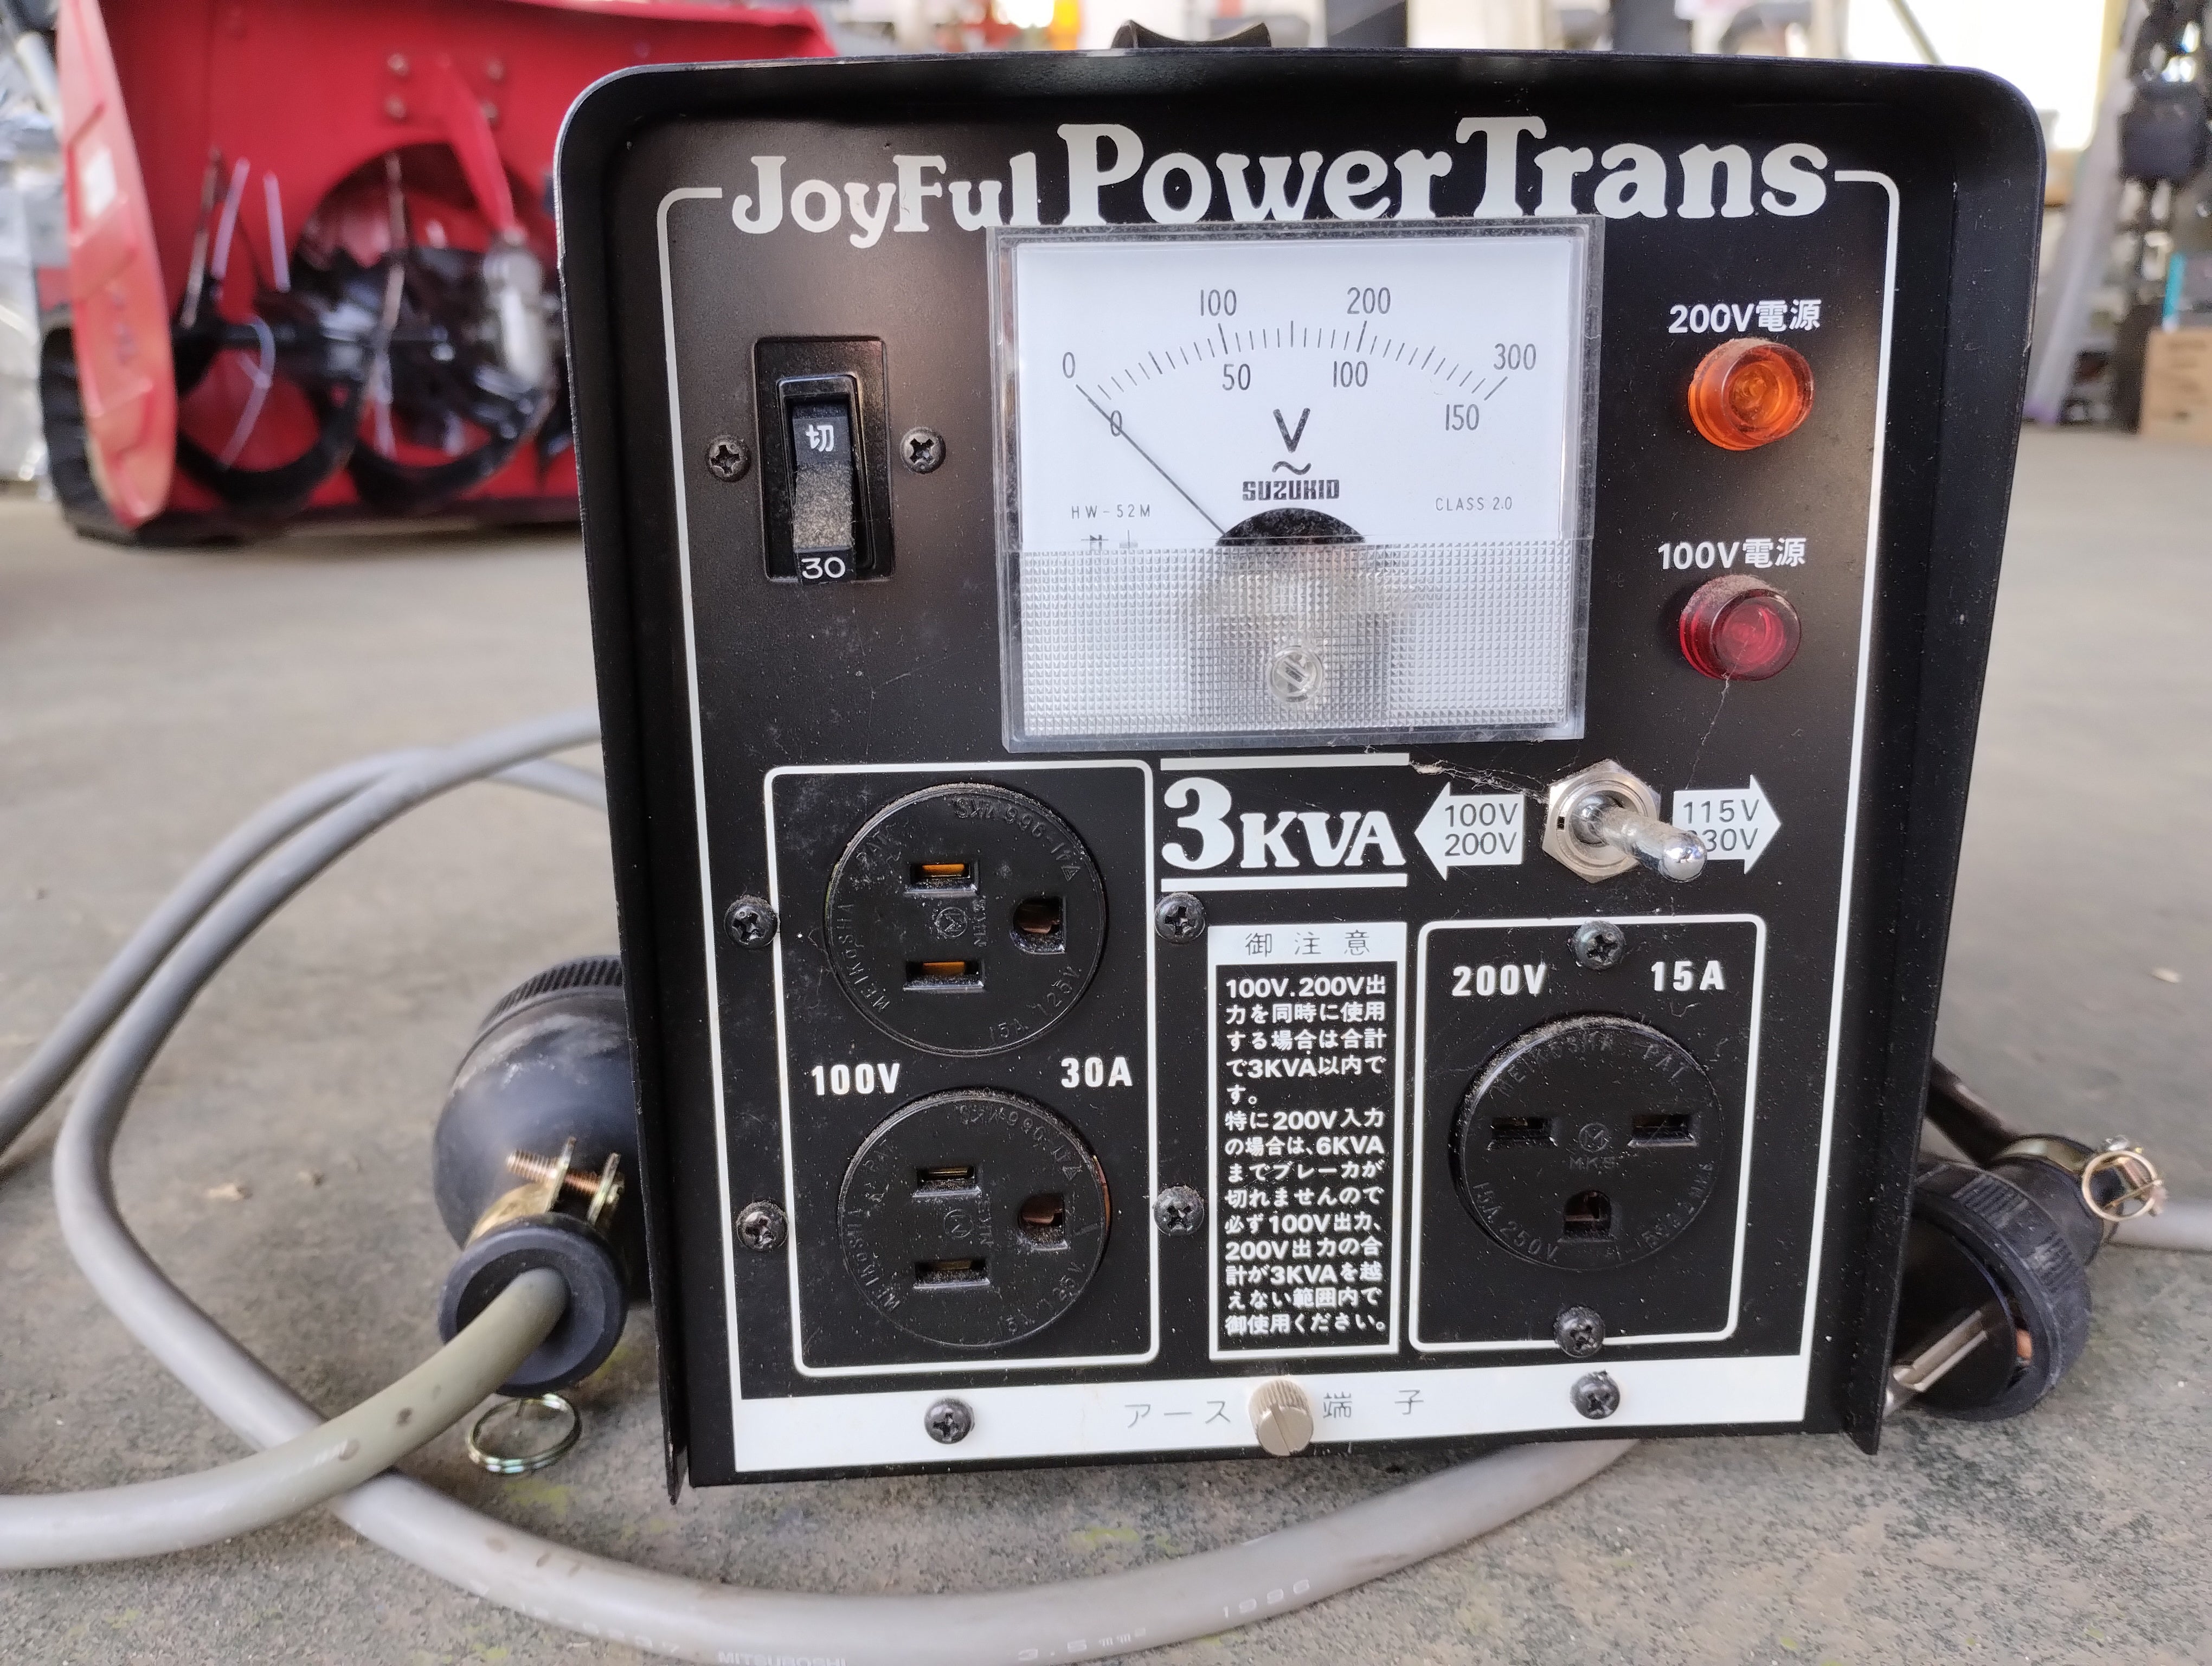 ホビー・楽器・アートjoyful power trans 変圧器 JPT-30型 - DJ機材